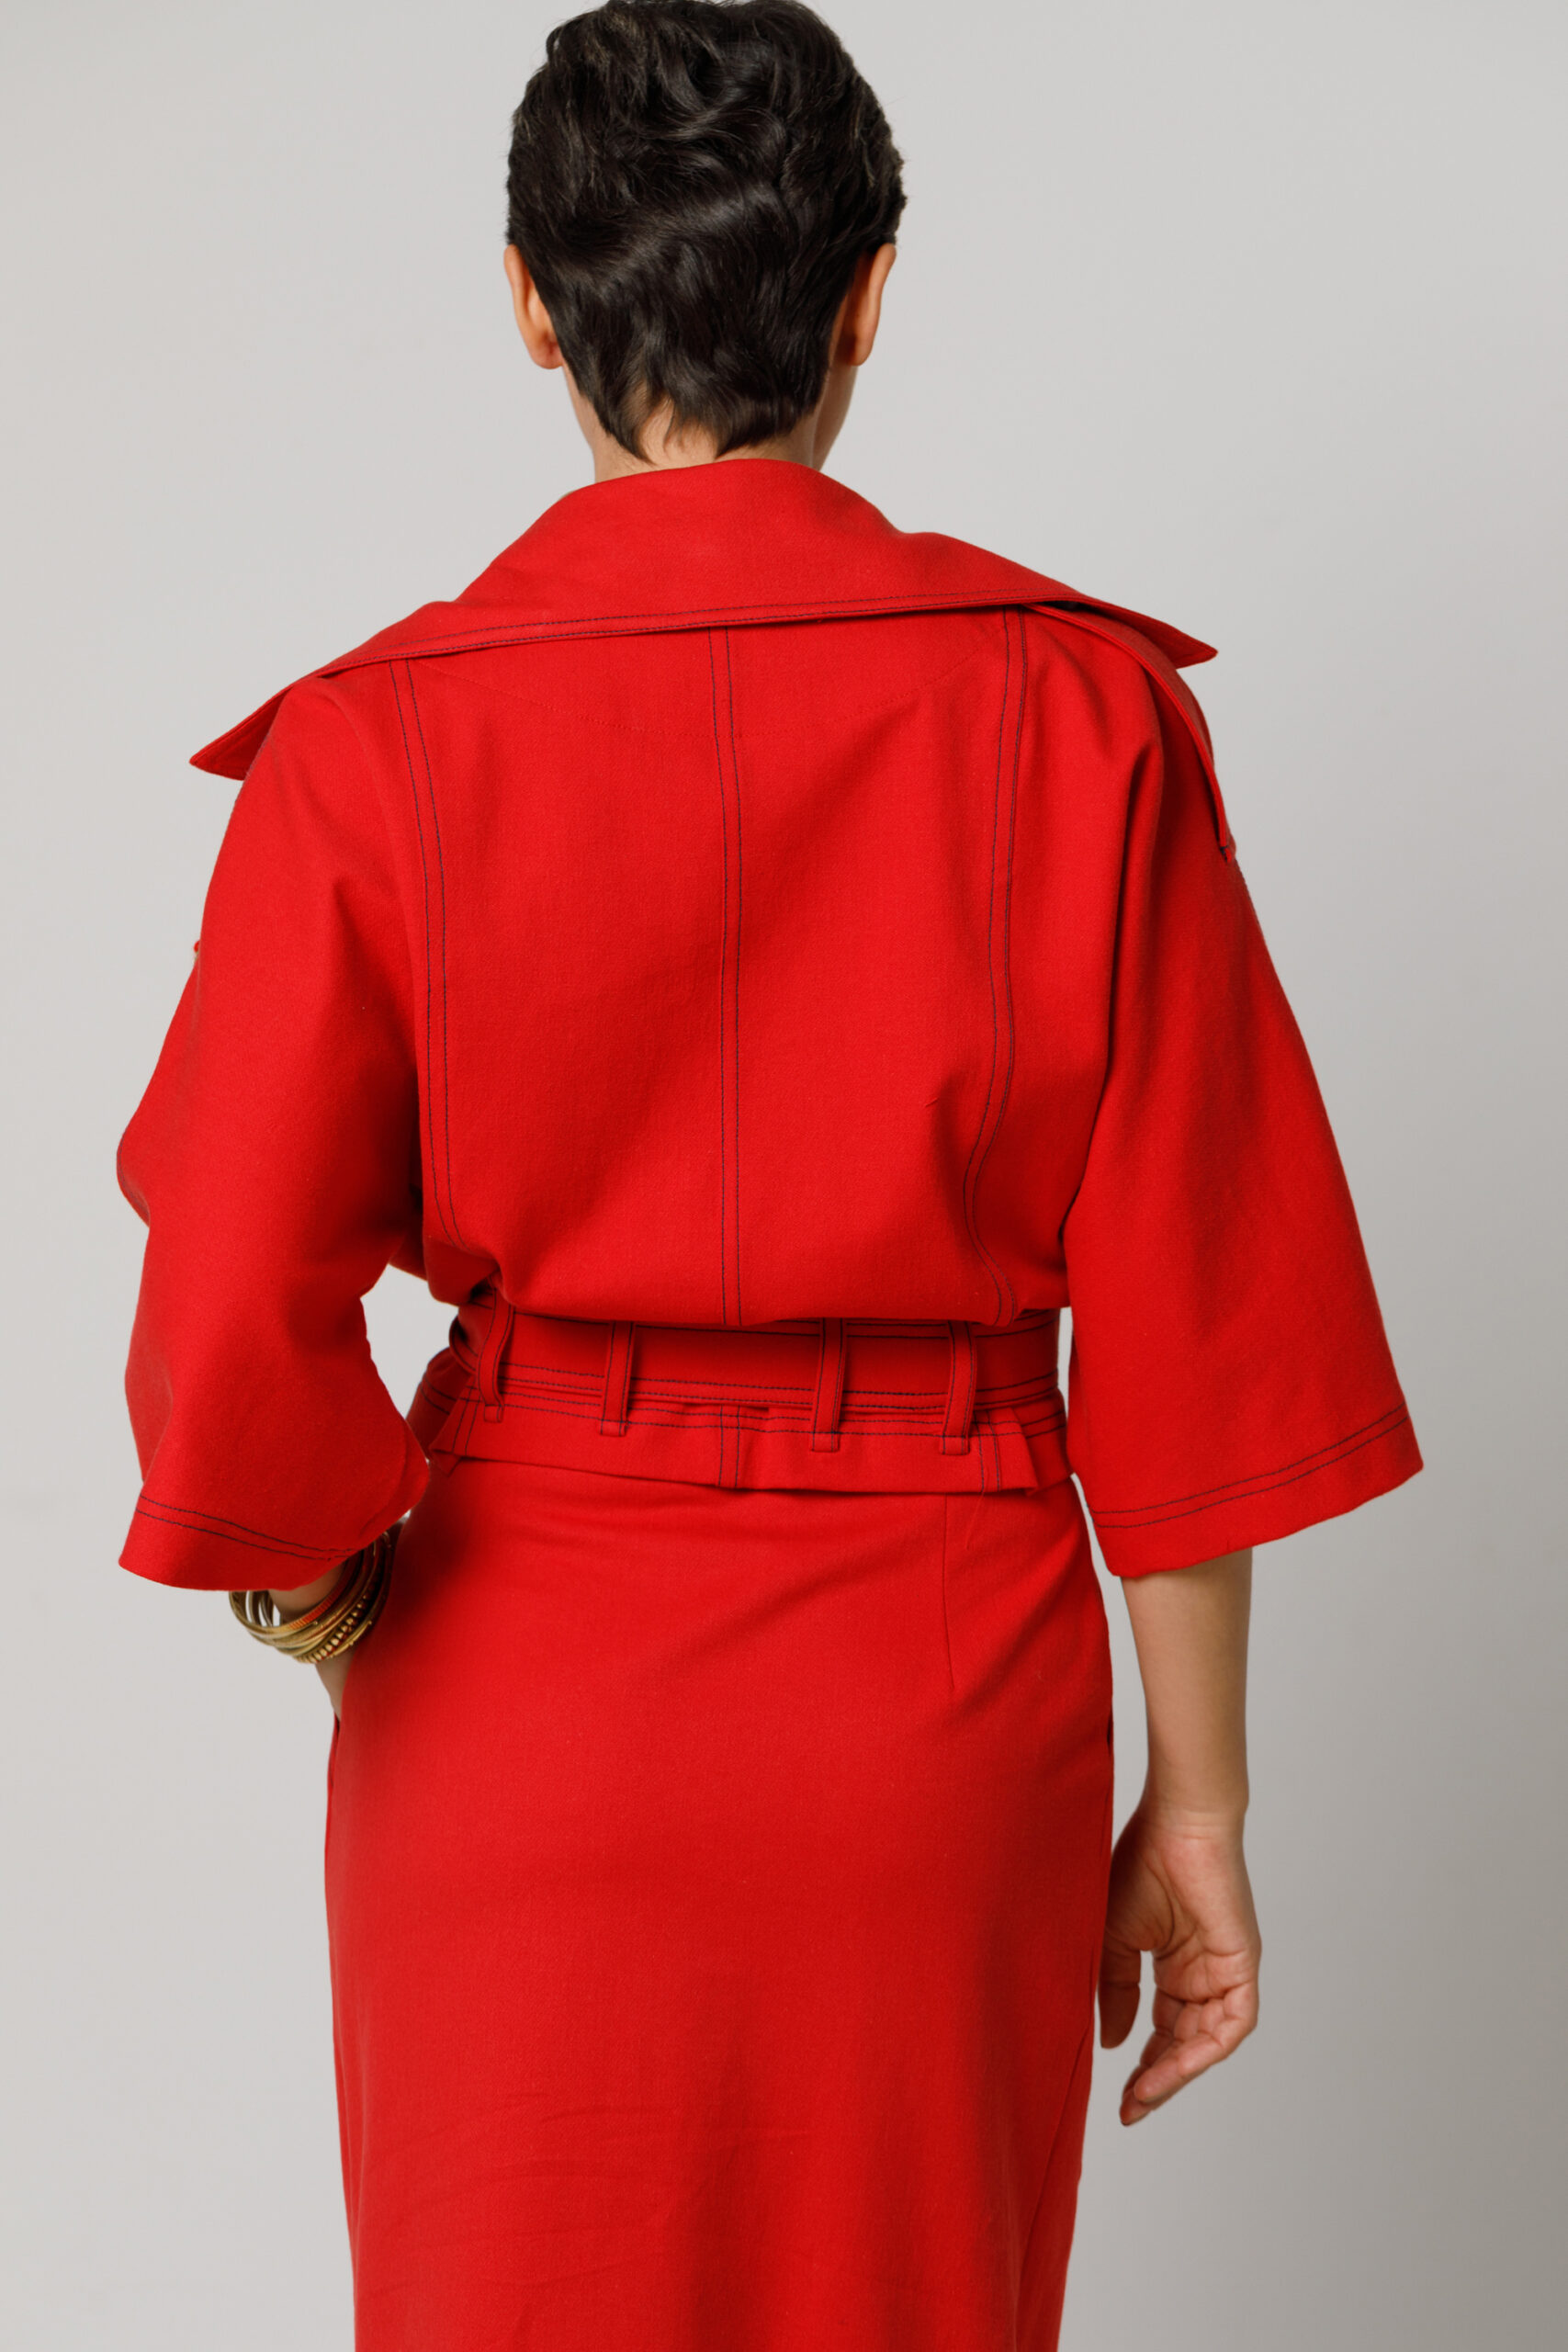 Jacheta LETO casual rosie scurta cu cordon. Materiale naturale, design unicat, cu broderie si aplicatii handmade